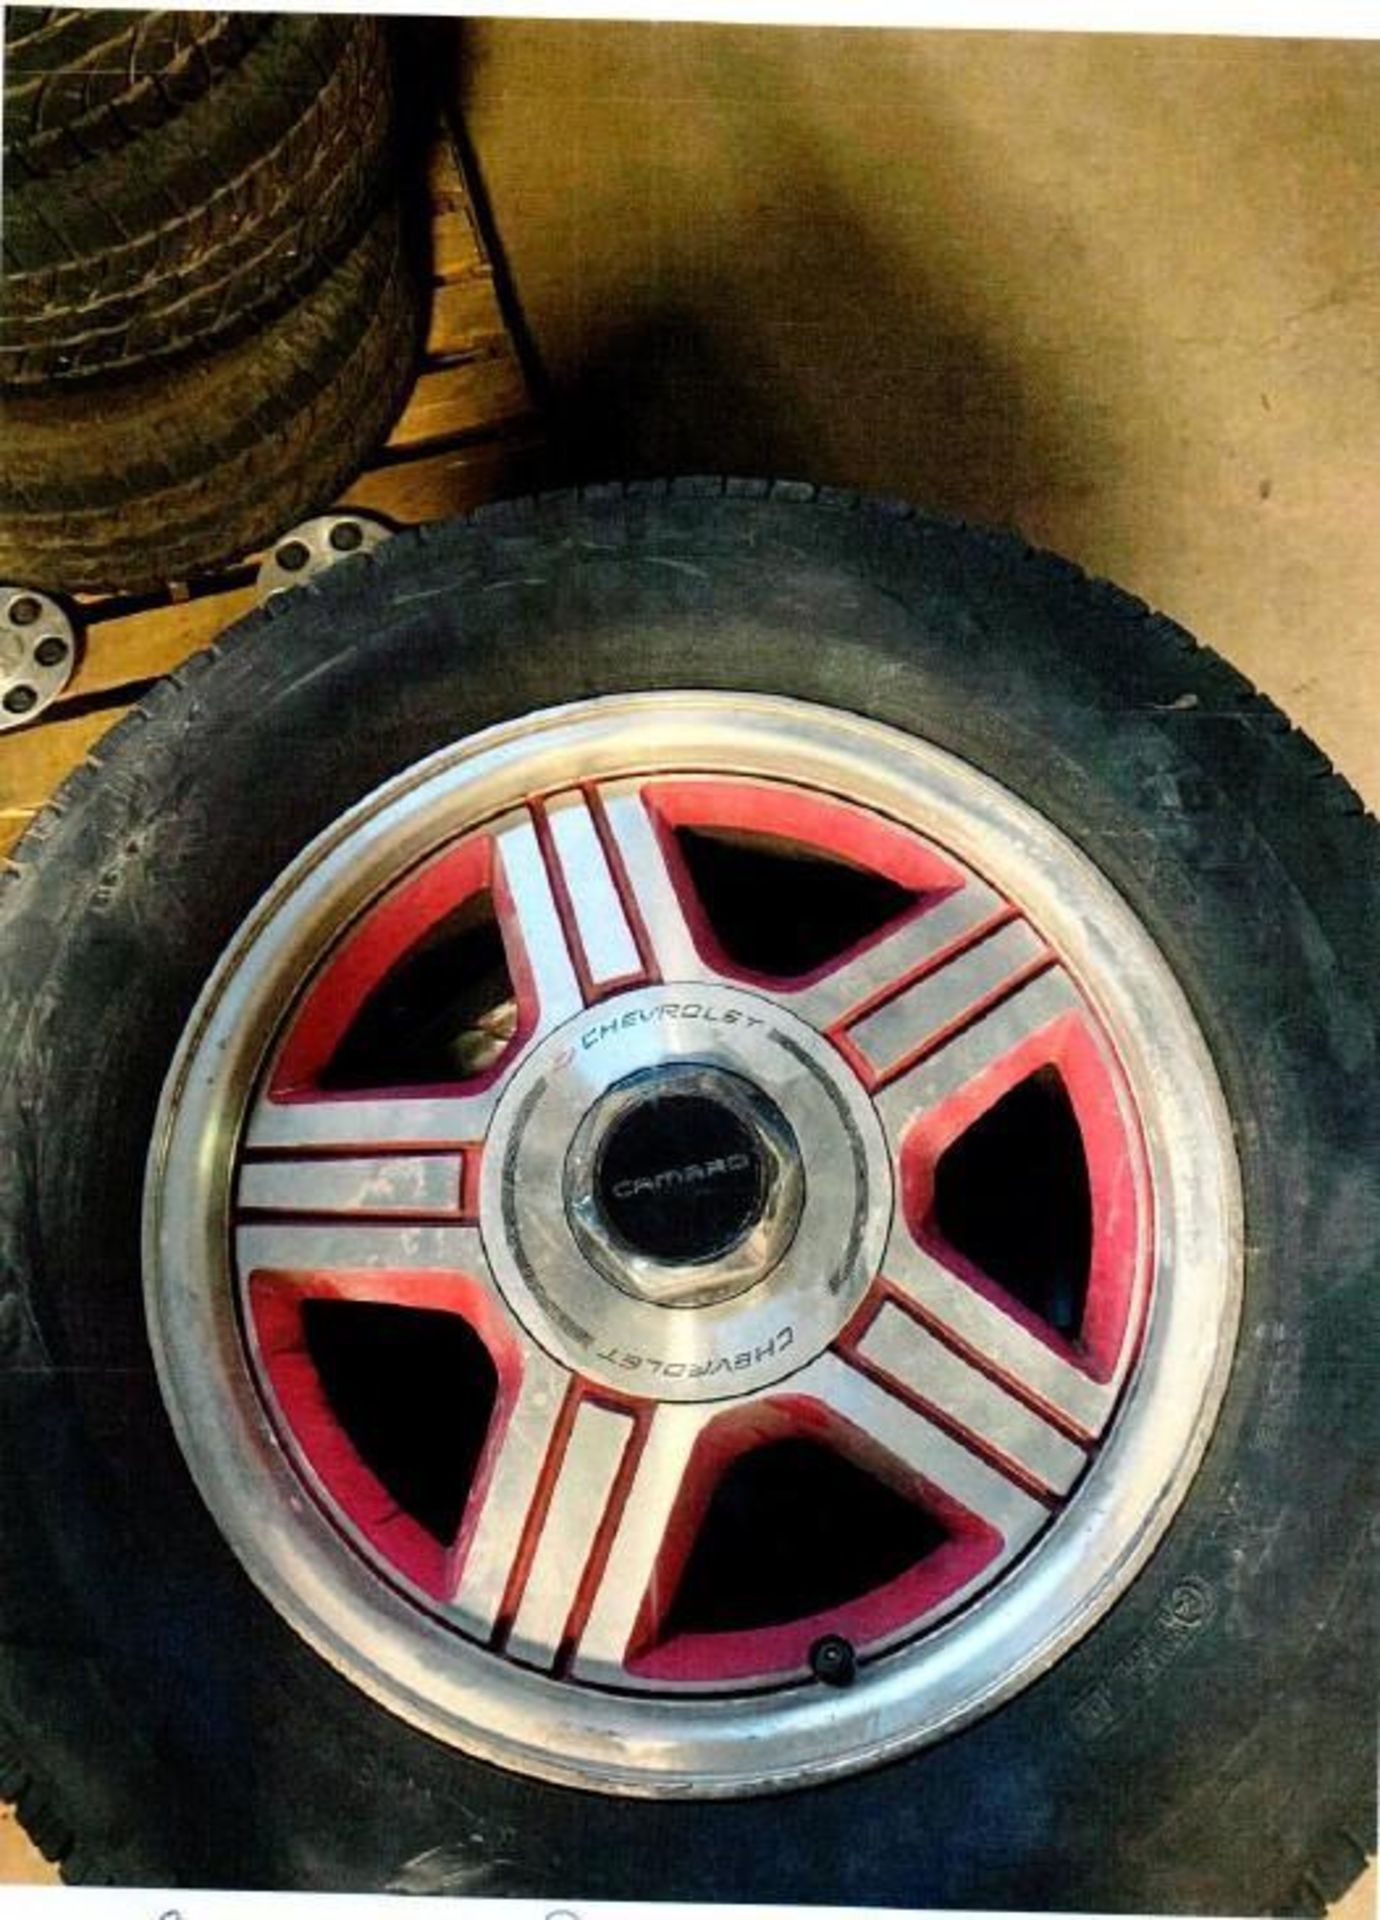 LOT: Complete Set (4) Camaro Rims & Tires